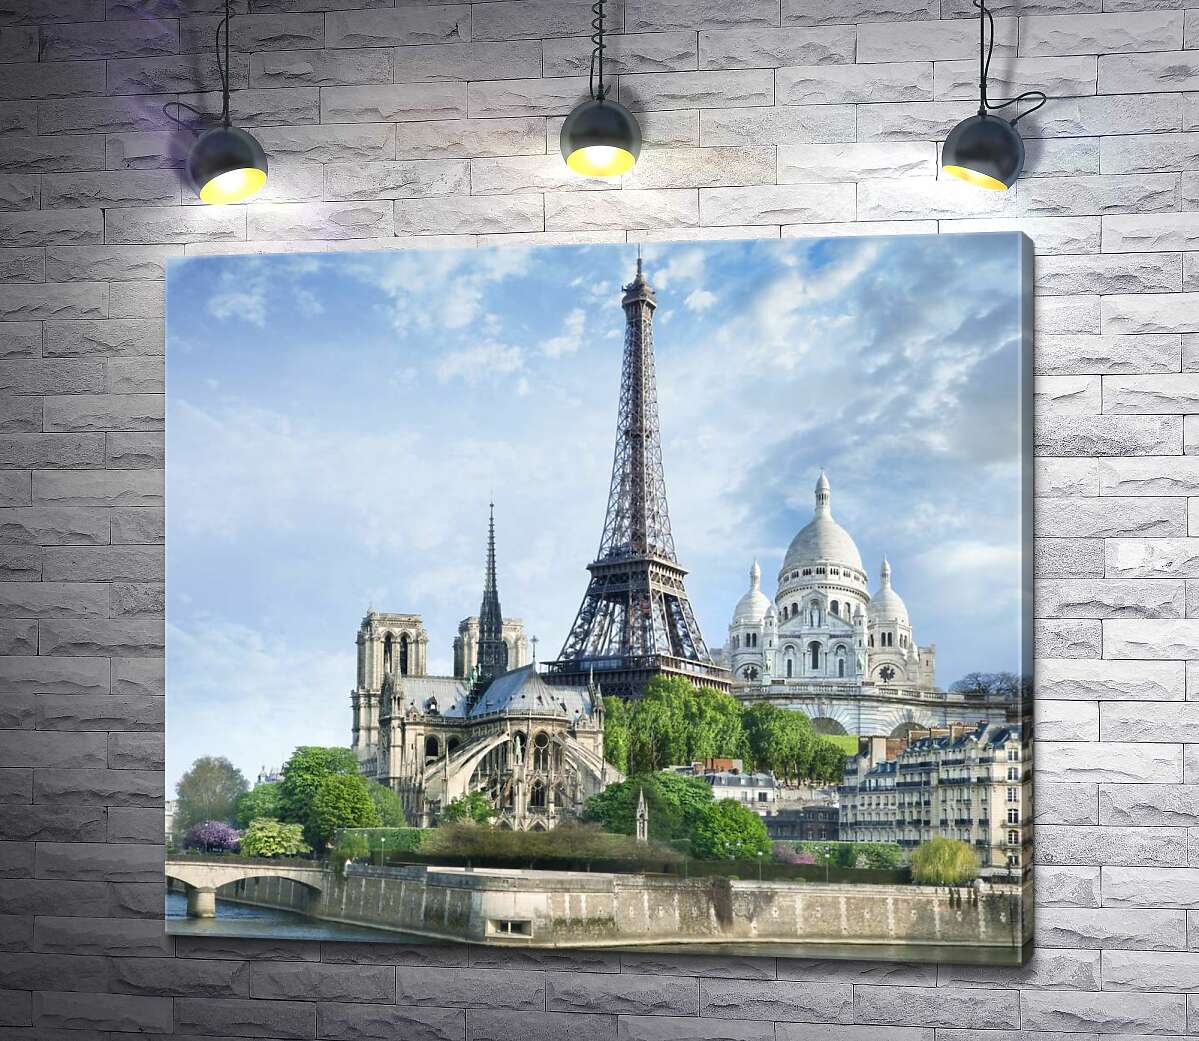 картина Архитектурные произведения Парижа: Эйфелева башня (Eiffel tower), Нотр-Дам-де-Пари (Notre Dame de Paris), базилика Сакре-Кер (Basilique du Sacre Cœur)